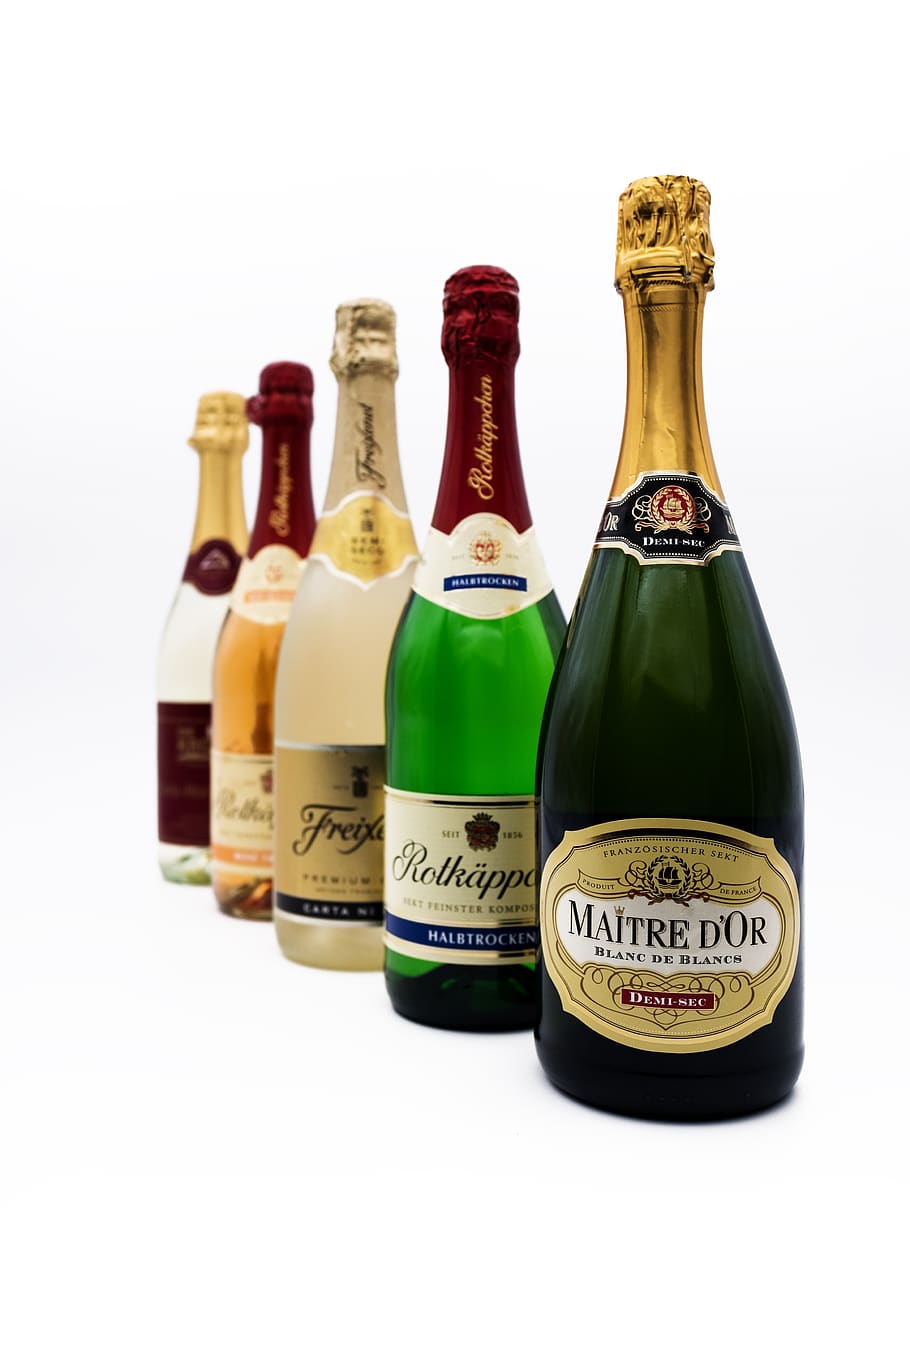 champagne, bottles, alcohol, drink, beverages, spirits, celebration, celebrate, bottle, container